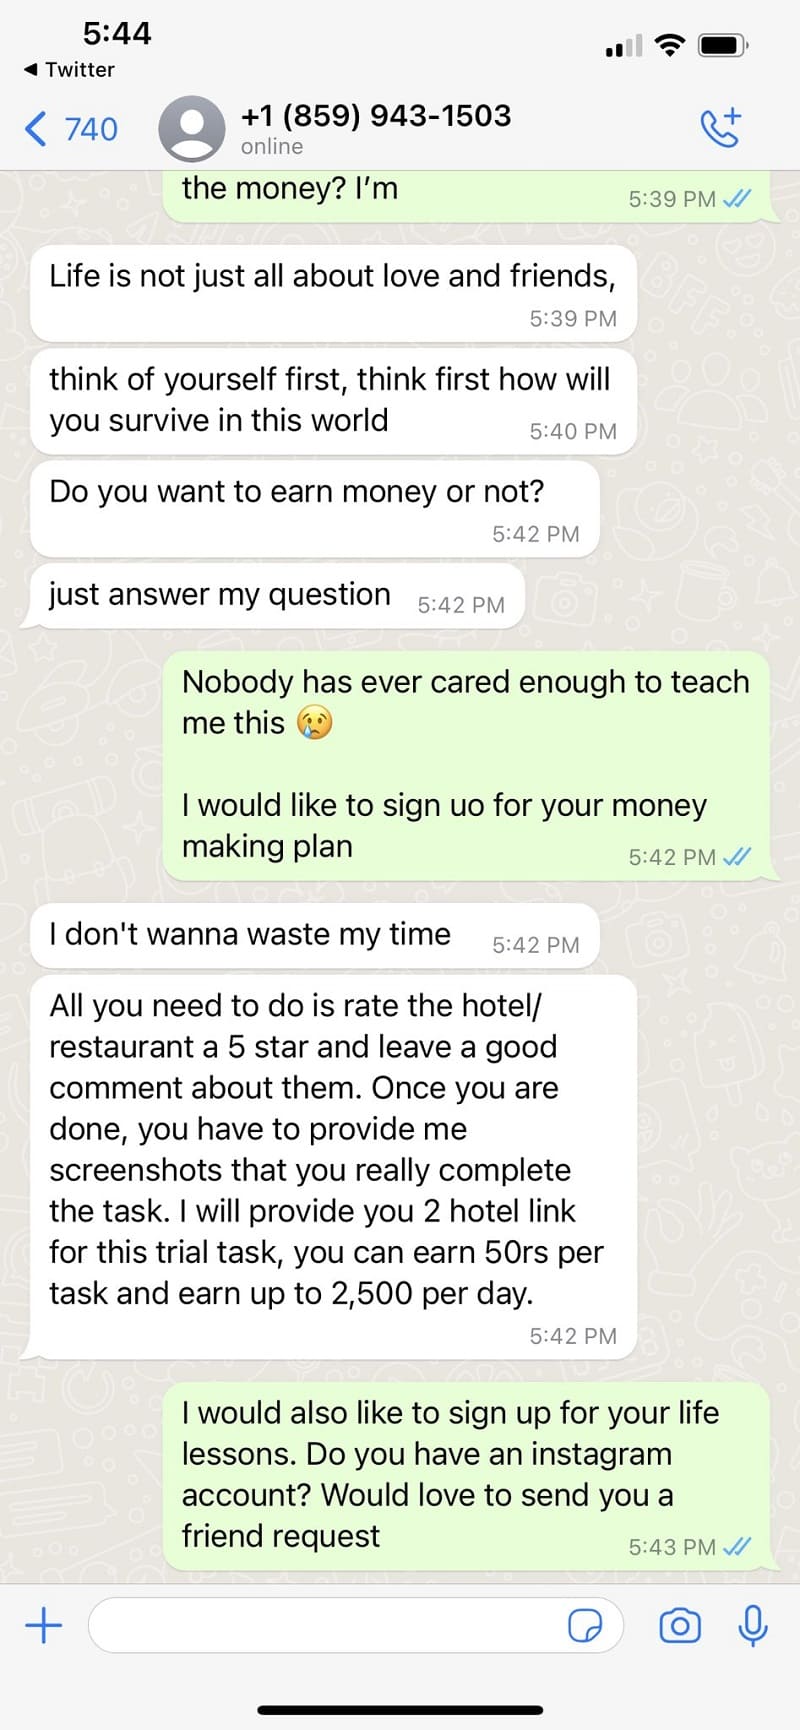 WhatsApp scammer teaches life lesson